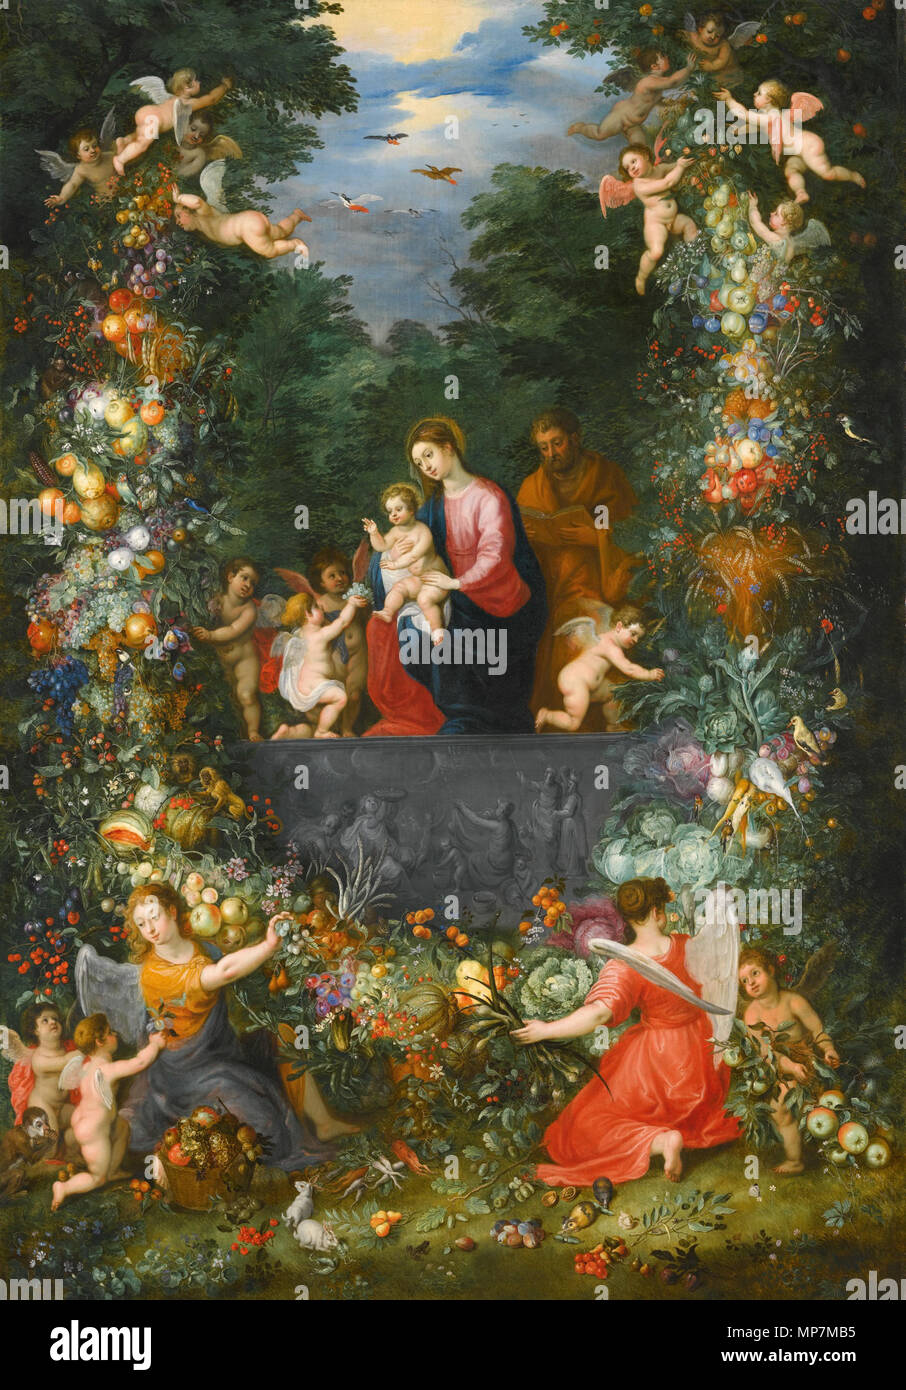 La Sainte Famille à l'intérieur d'une guirlande de fleurs, de fruits et légumes tenu par des anges . Jan Brueghel le Jeune (1601-1678) Noms alternatifs Jan Bruegel (II), Jan Brueghel (II), Jan Brueghel le jeune peintre et dessinateur Flamand Description Date de naissance/décès 13 septembre 1601 (baptisé) 1er septembre 1678 Lieu de naissance/décès Anvers Anvers lieu d'Italie (1622-août 1625), Anvers (1625-1678) contrôle d'autorité : Q285933 : VIAF 42046414 ISNI : 0000 0000 8376 3302 ULAN : 500013747 RCAC : n85095027 : WGA, Jan Brueghel le Jeune WorldCat et d'Hendrick van Balen (1575- Banque D'Images